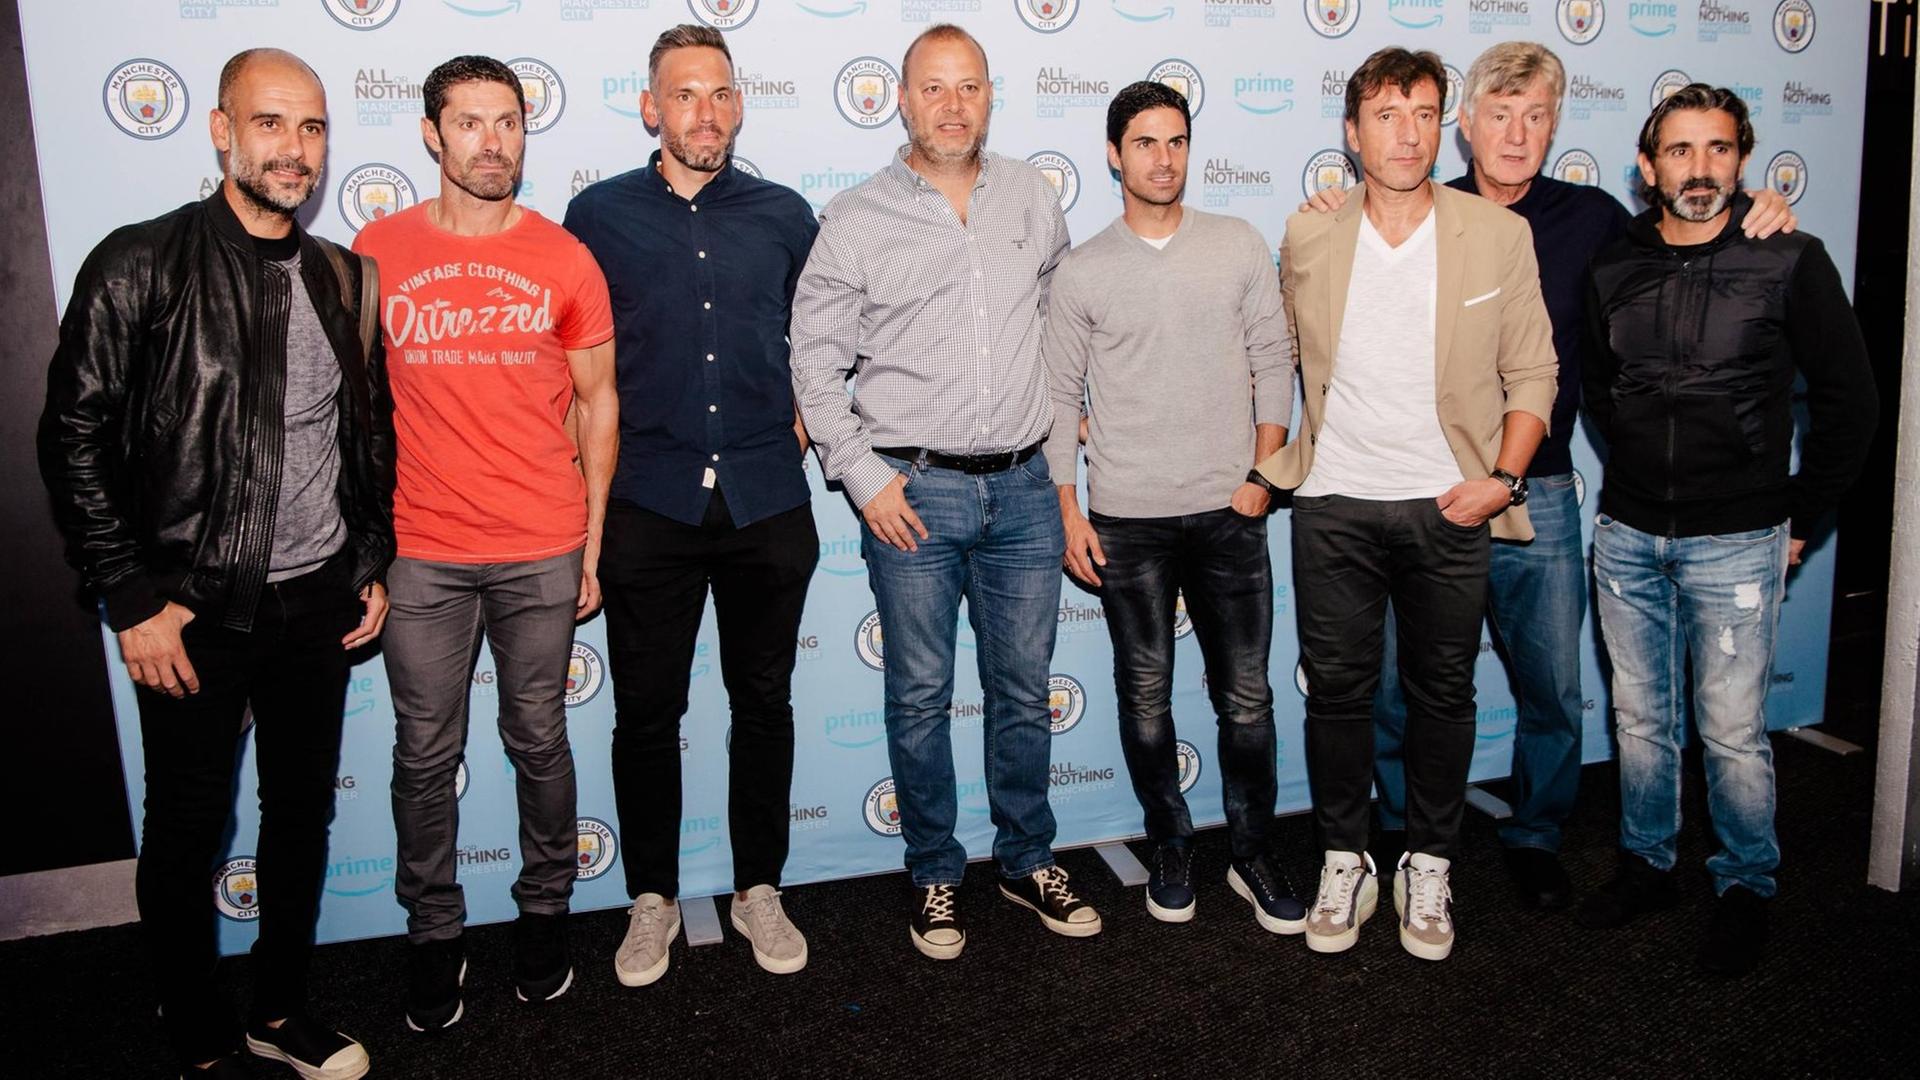 Premiere der neuen Serien "All or nothing" mit Pep Guardiola, Rodolfo Borrell, Xabi Mancisidor, Carles Planchart, Brian Kidd und Lorenzo Buenaventura.